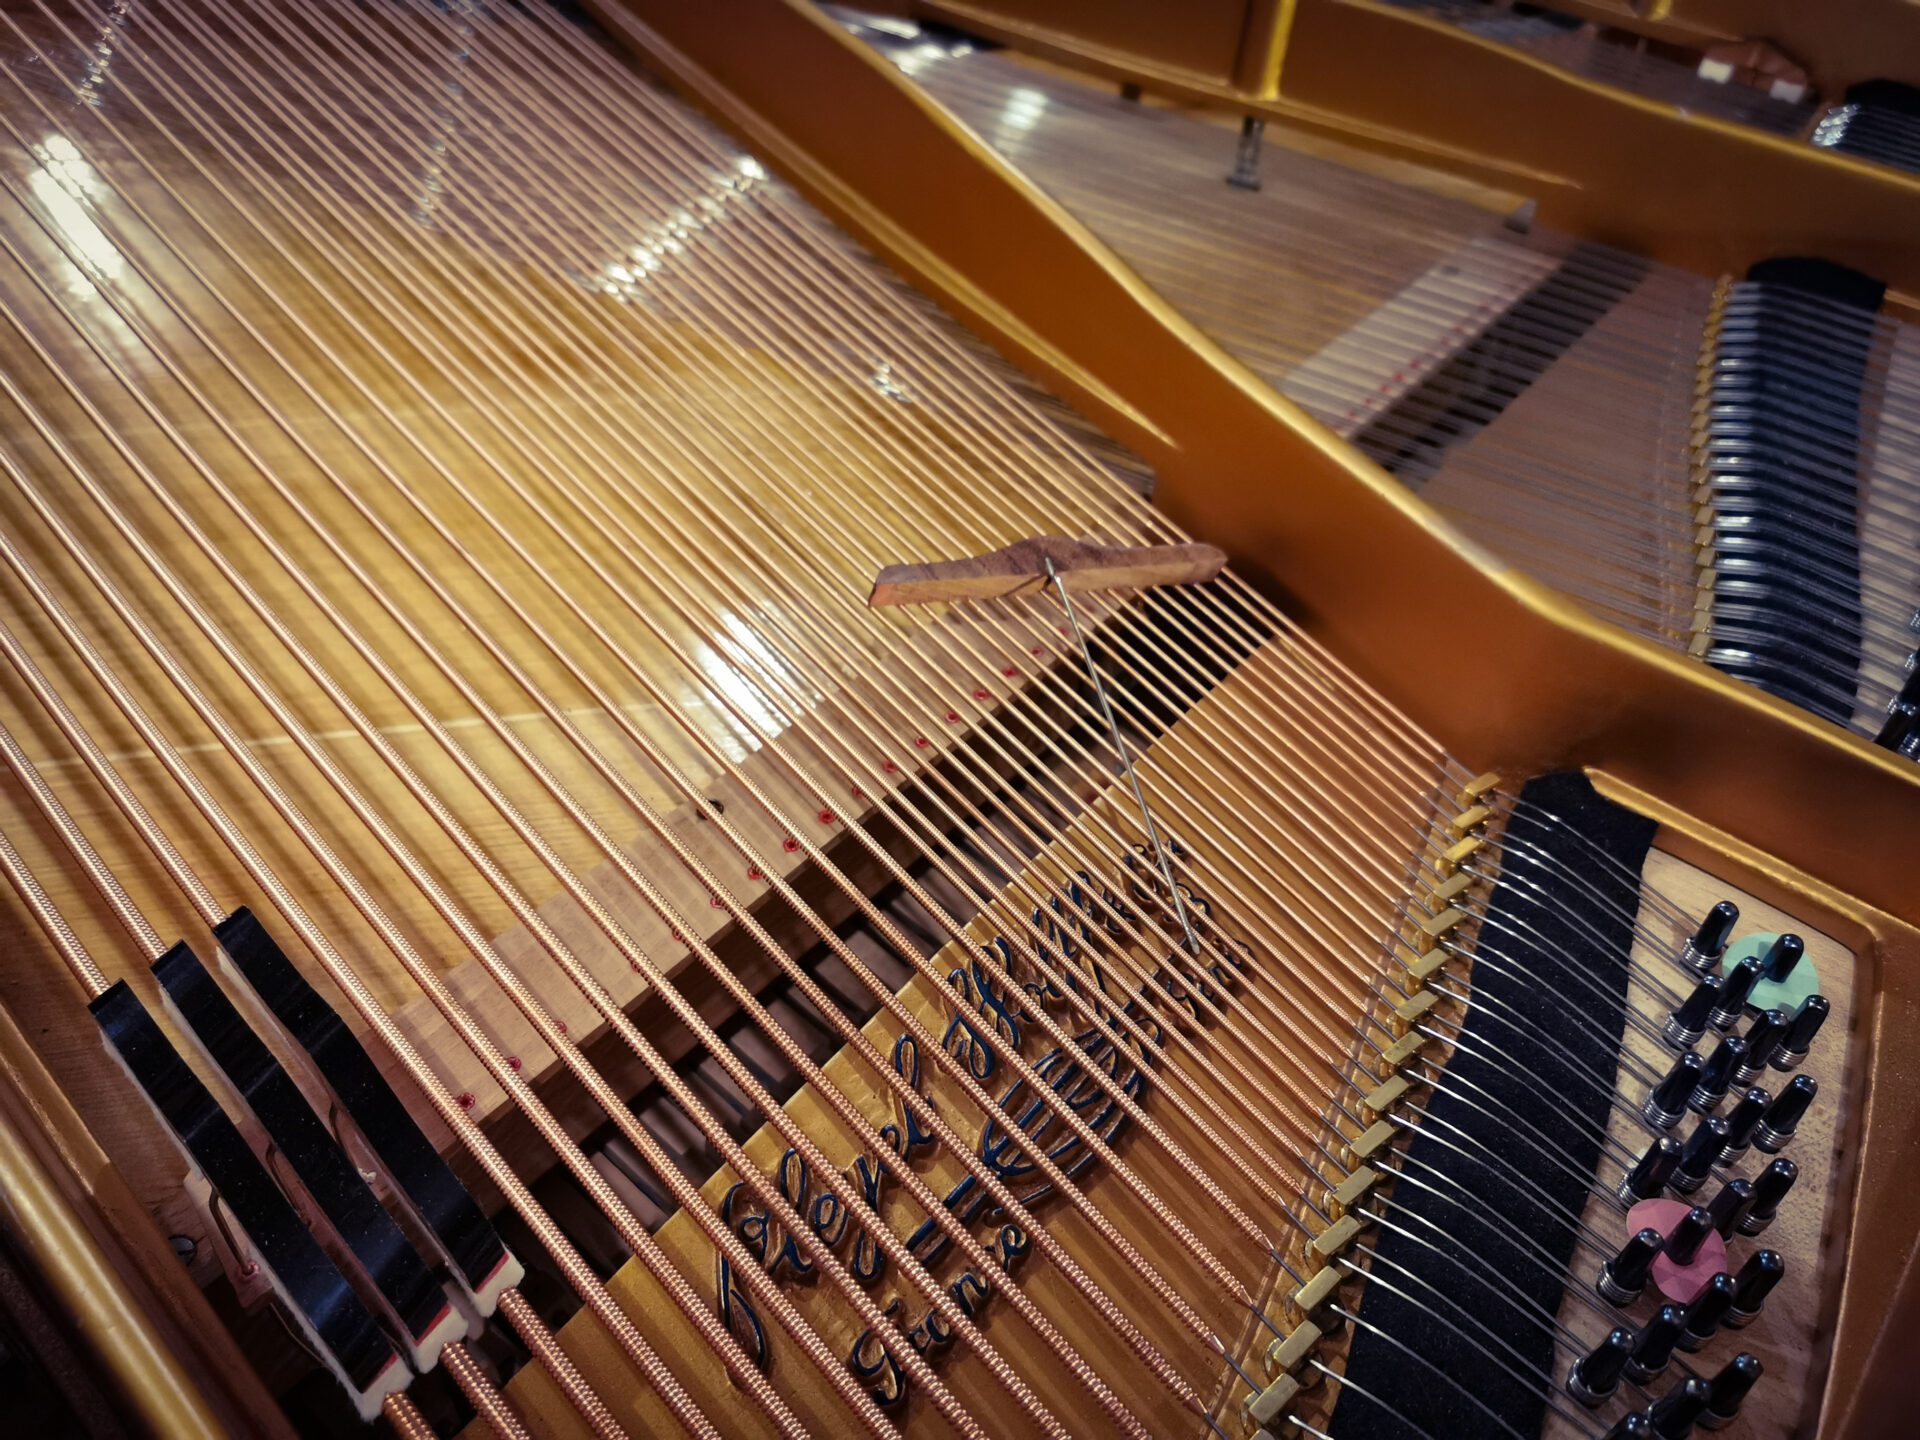 mpntage des étouffoirs sur les cordes de piano demi queue Pleyel 2m04 de 1899 dans atelier de restauration de pianos de Marion Lainé en Savoie